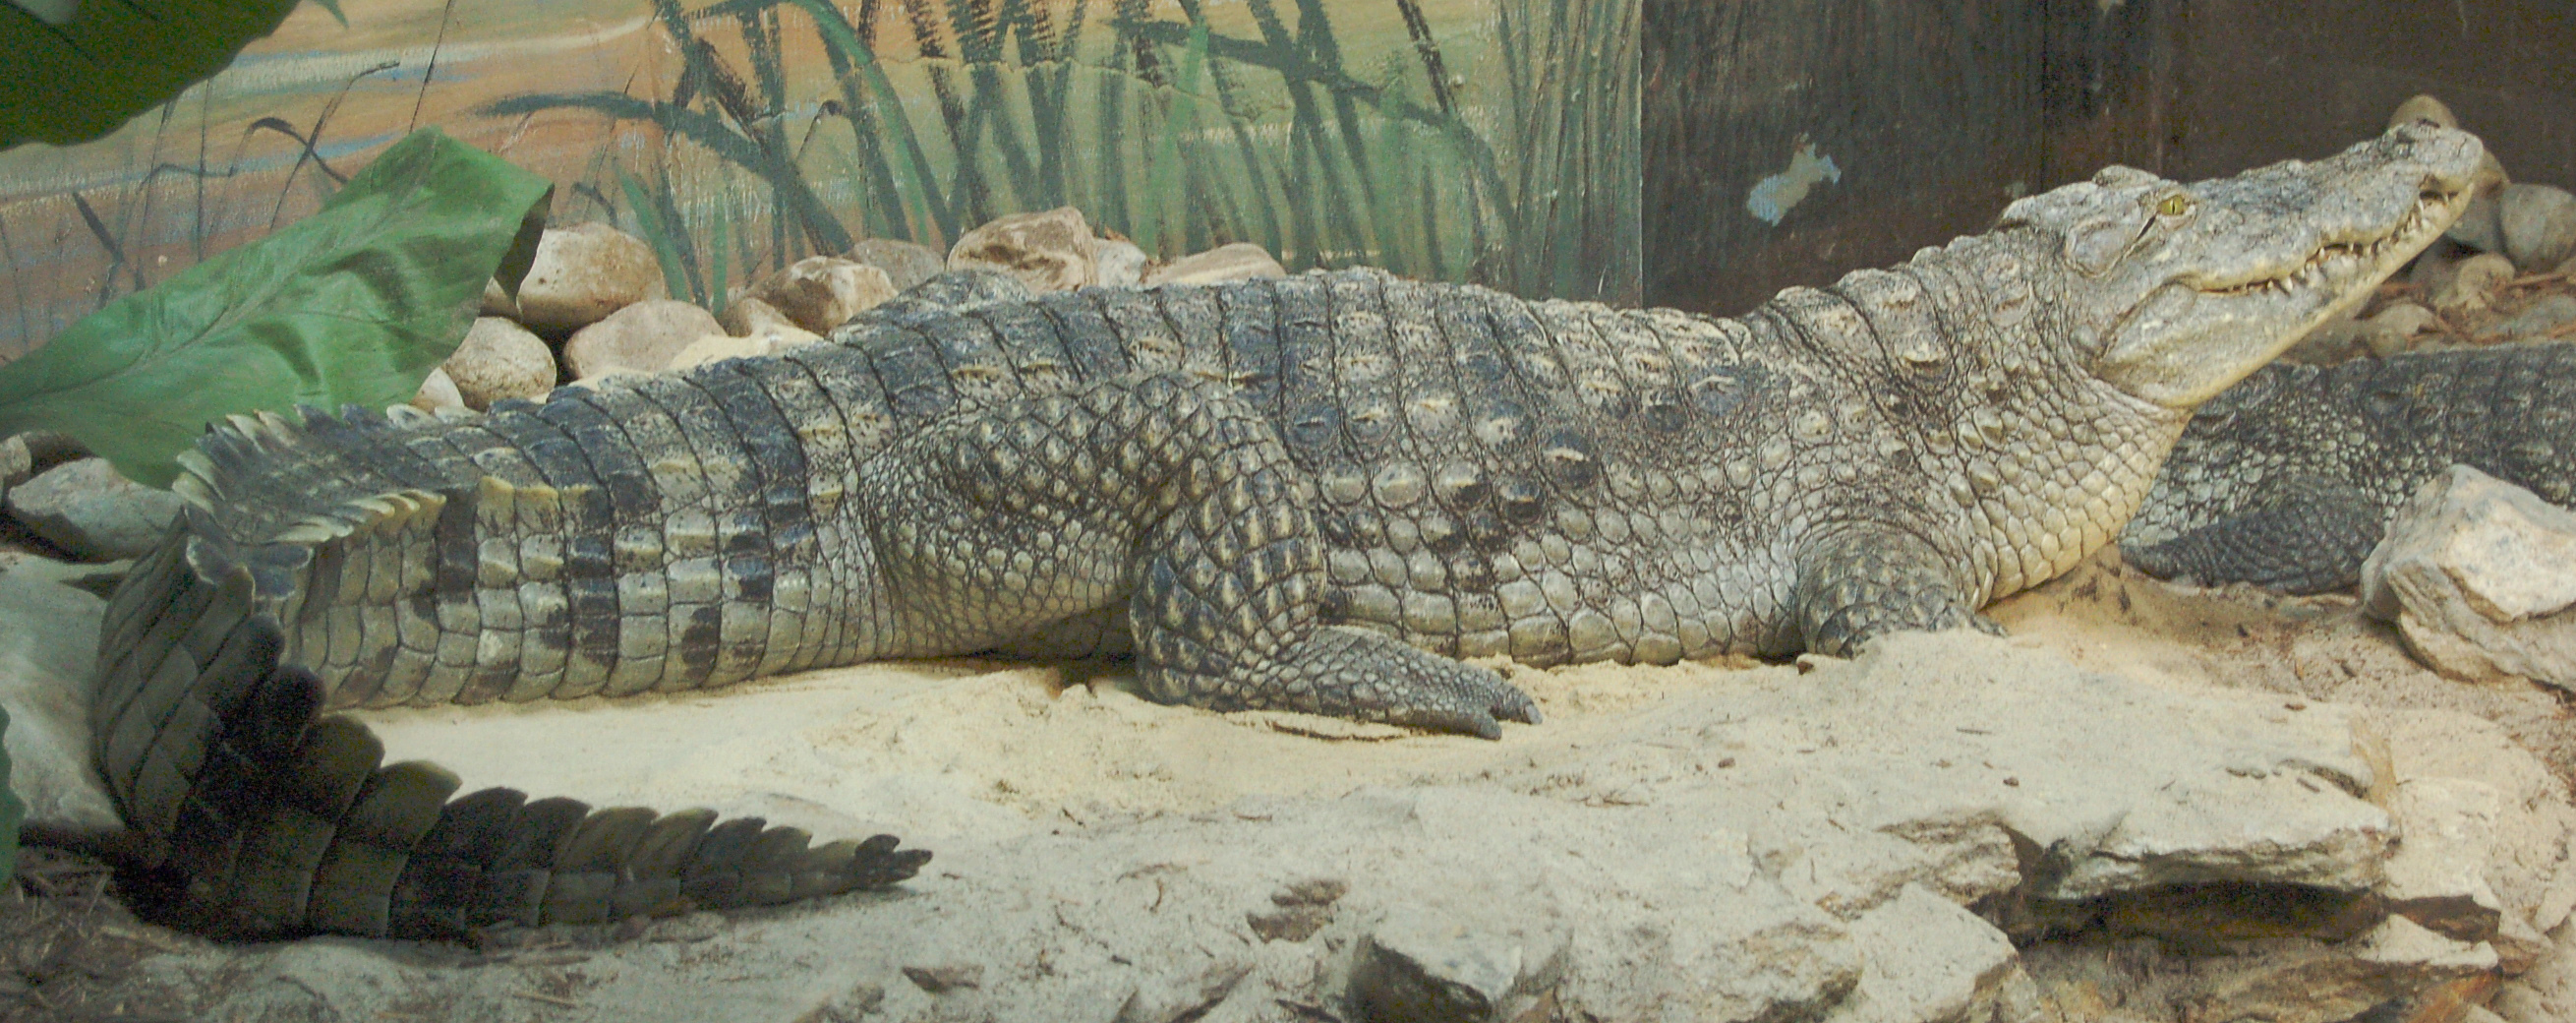 A Nile Crocodile